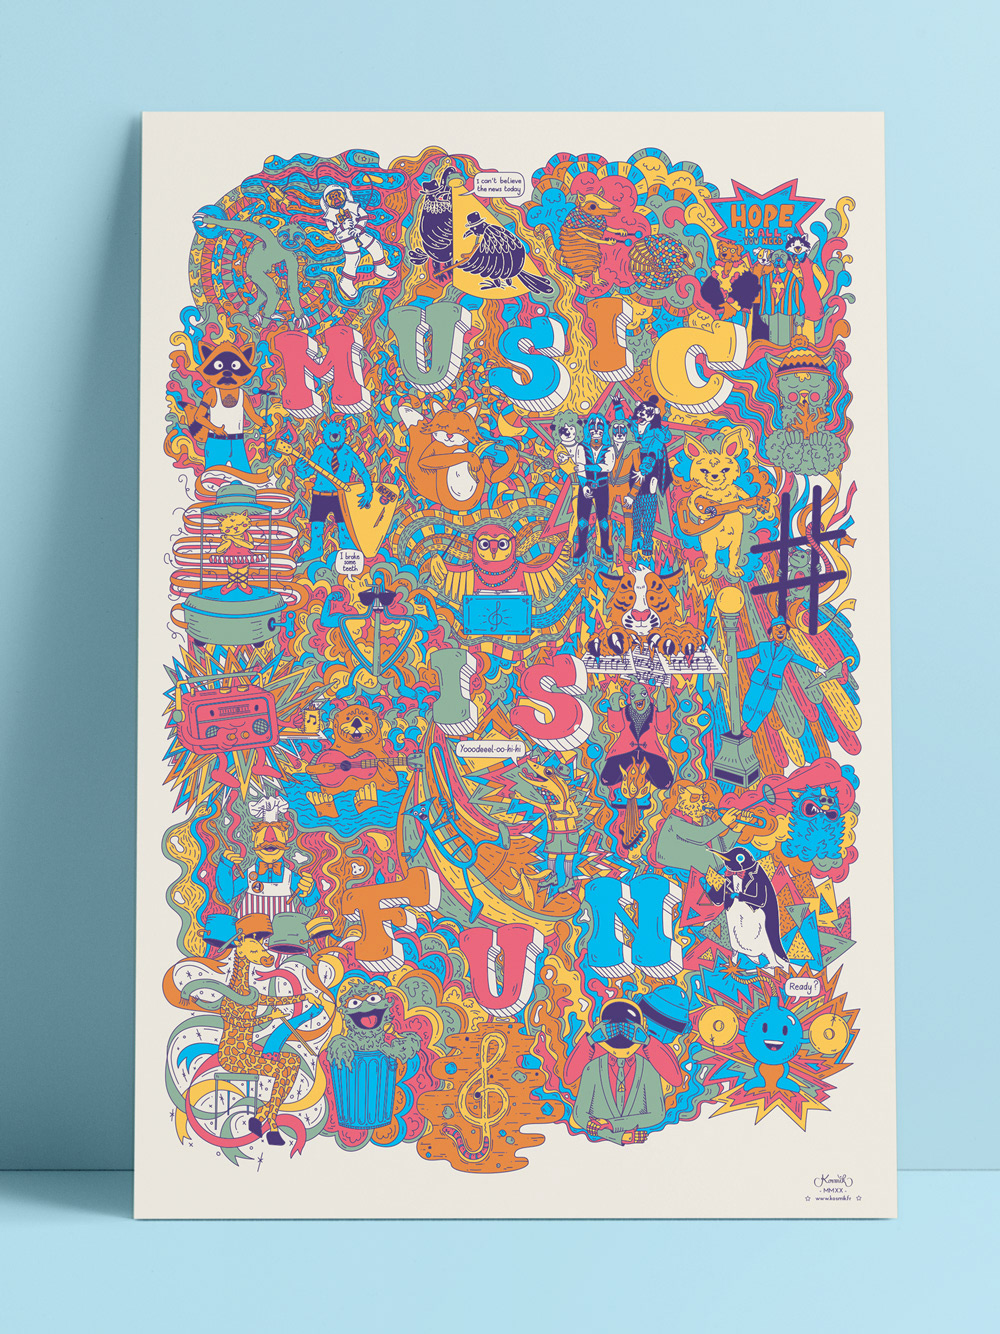 Poster ayant pour thème "music is fun" avec un tas de mini dessins liés par les couleurs.